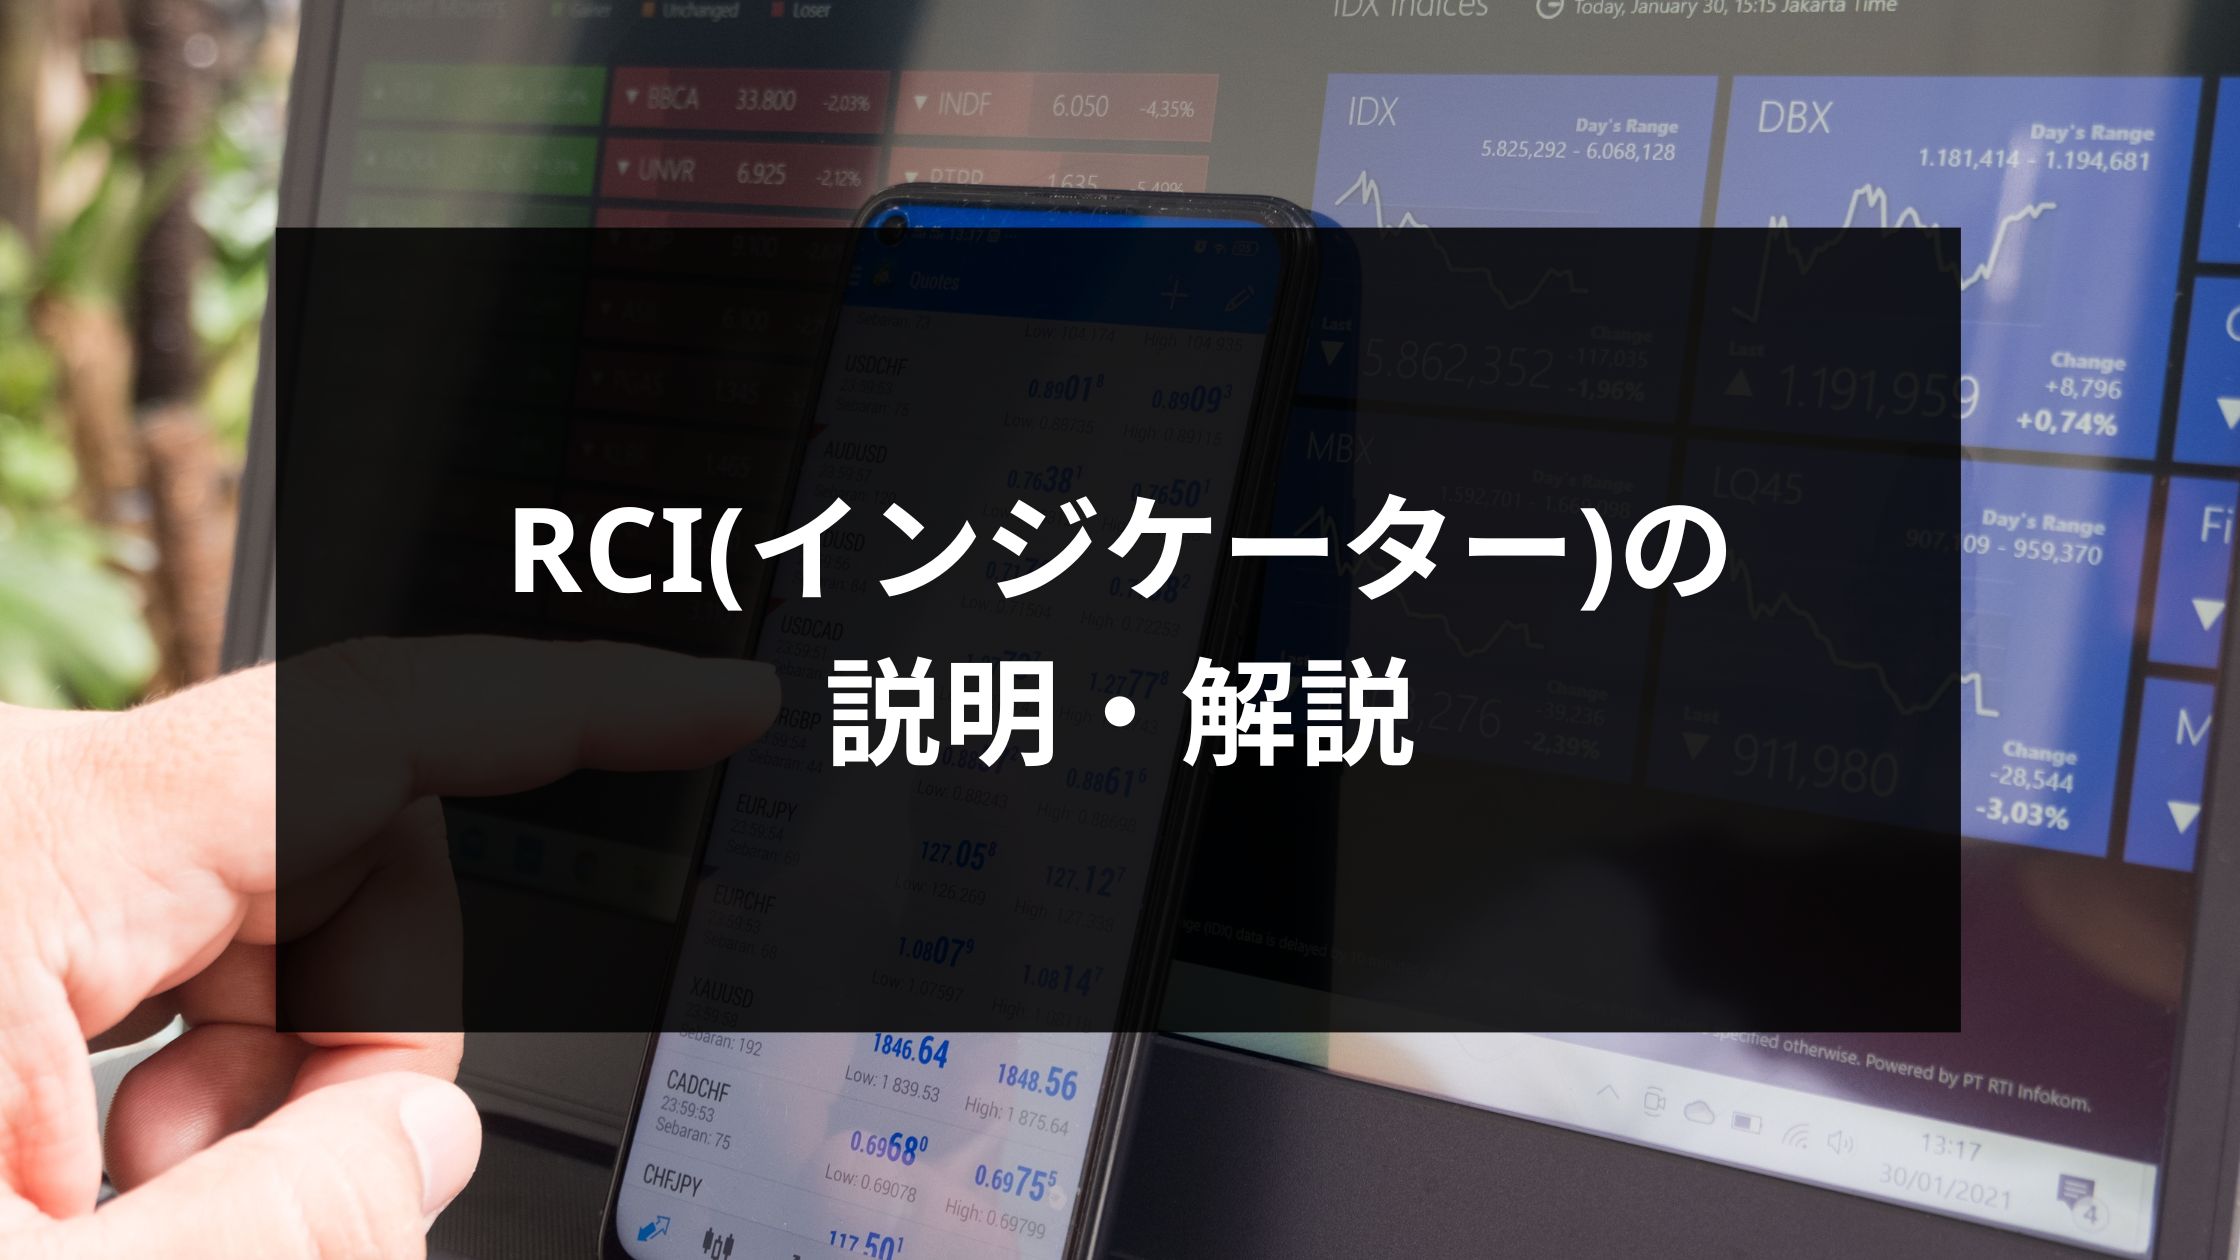 RCI_アイキャッチ